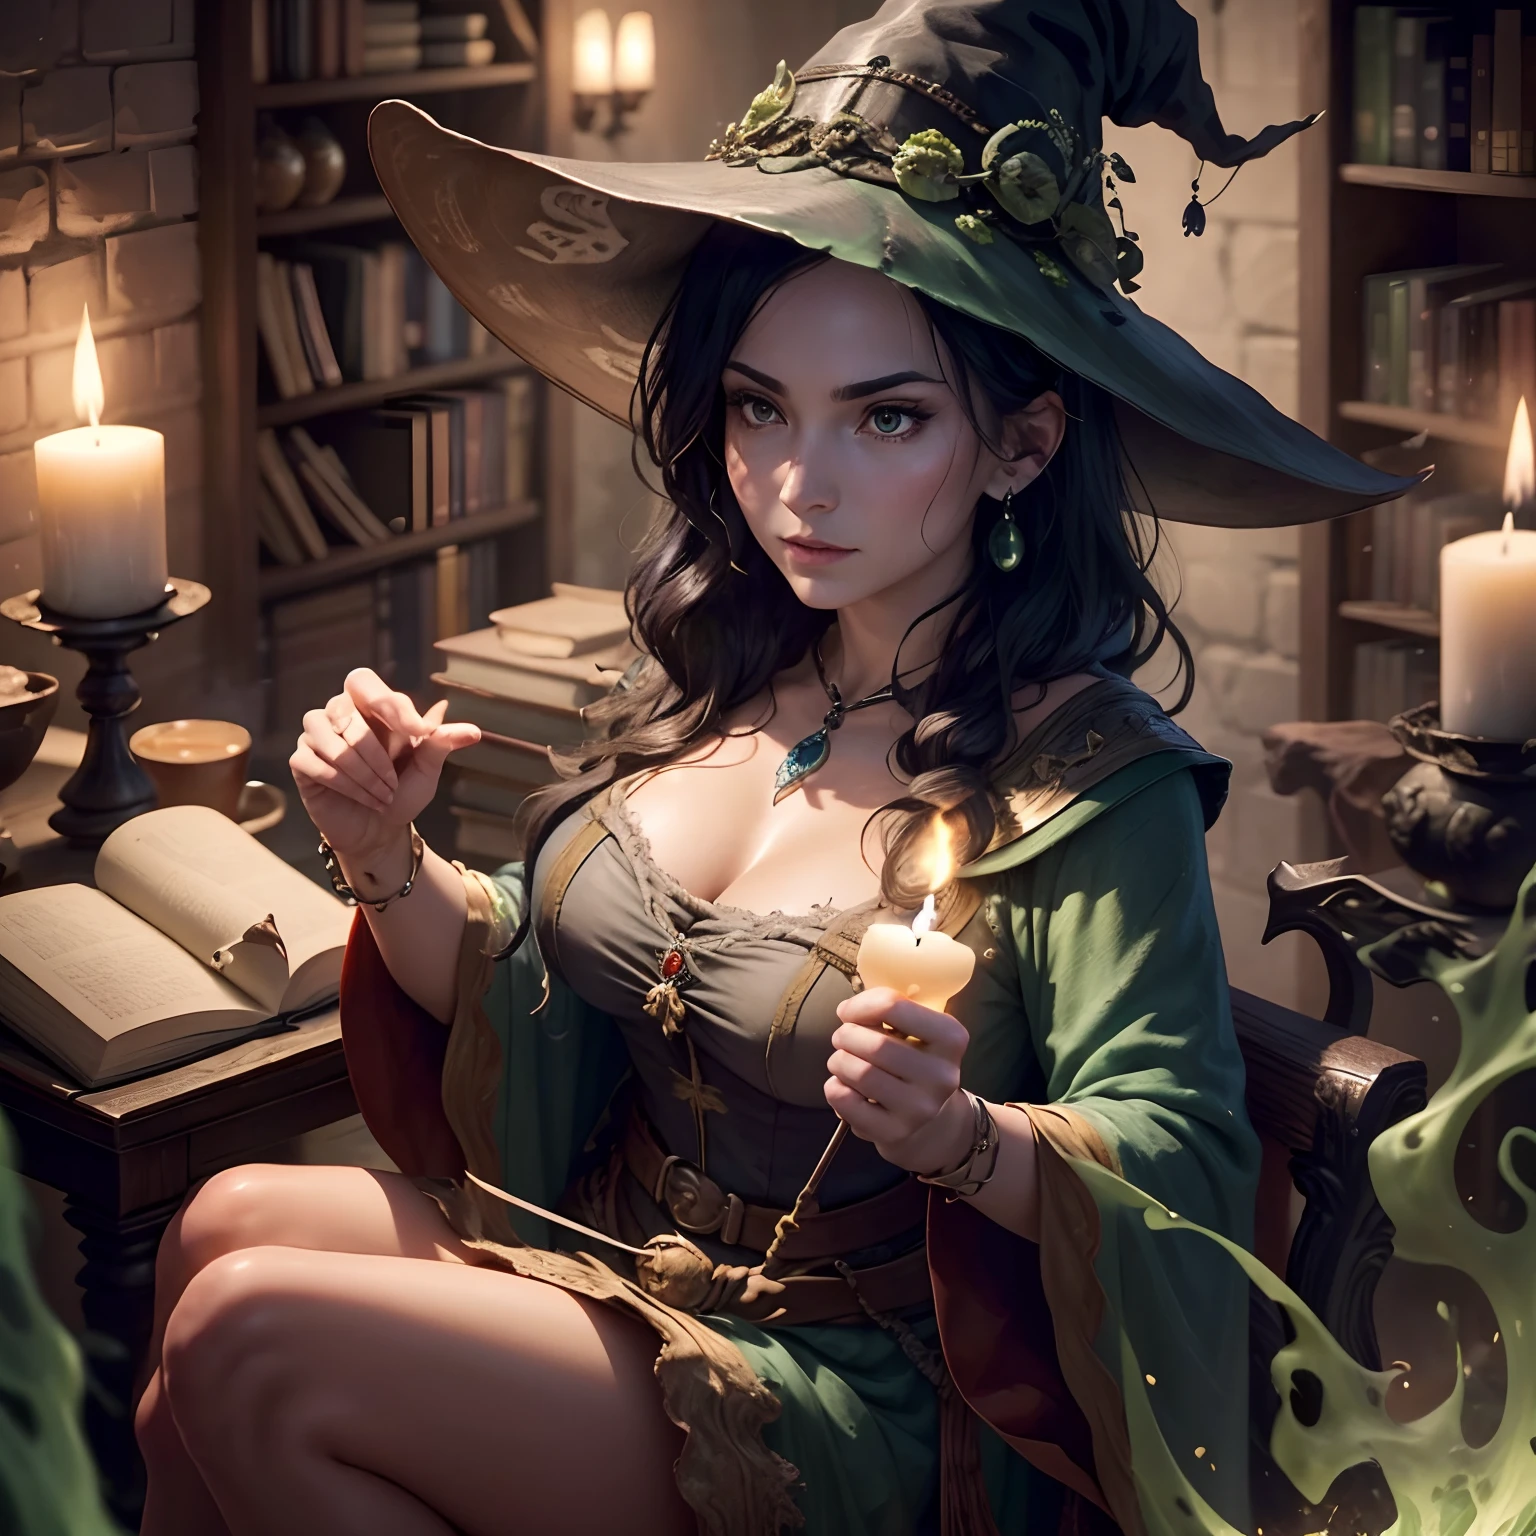 (高质量 , 超详细 , 手部细节 , 手指详细 ) 身材高挑、美丽动人的罗马尼亚黑发女巫在魔药室调制咒语和灵丹妙药的场景. 这个房间里有一个、女巫和她的化学反应上有一个巨大的魔法书库和漂浮的蜡烛. 有一锅黑巫婆，里面装满了冒泡的绿色液体,、还很遥远.、它自己在搅动